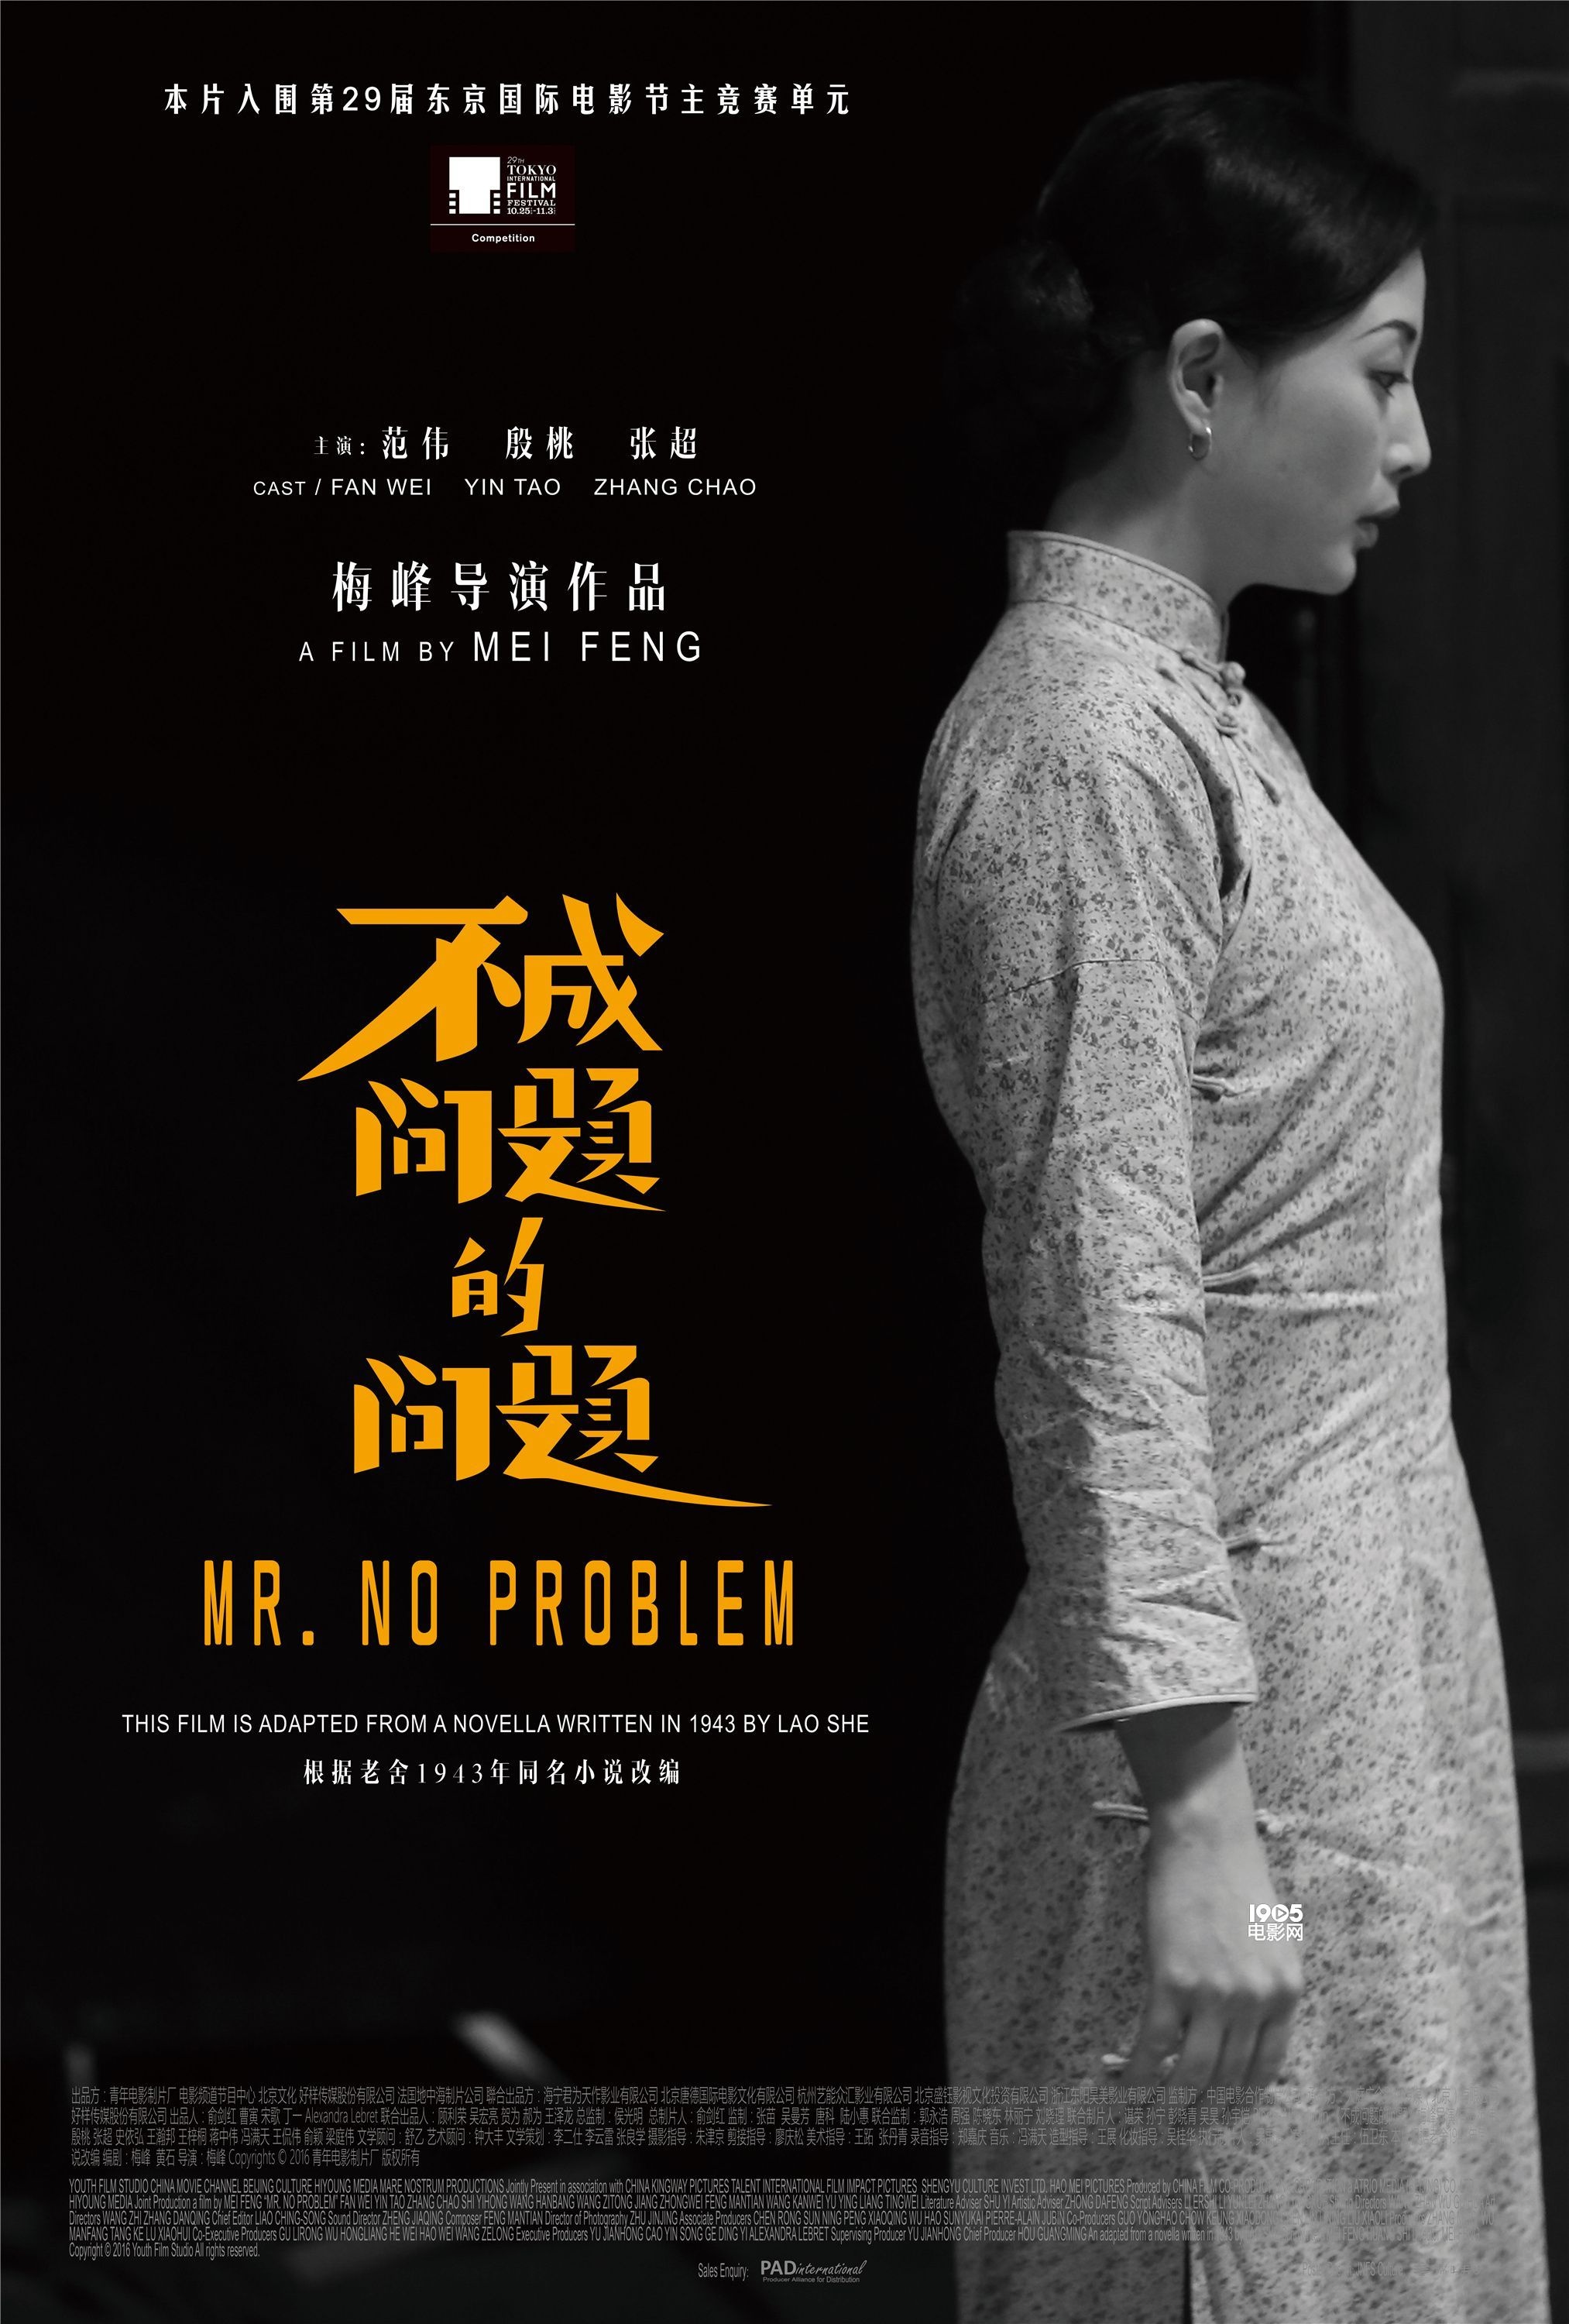 殷桃《不成问题》全球首映 悲悯演绎中国式聪明